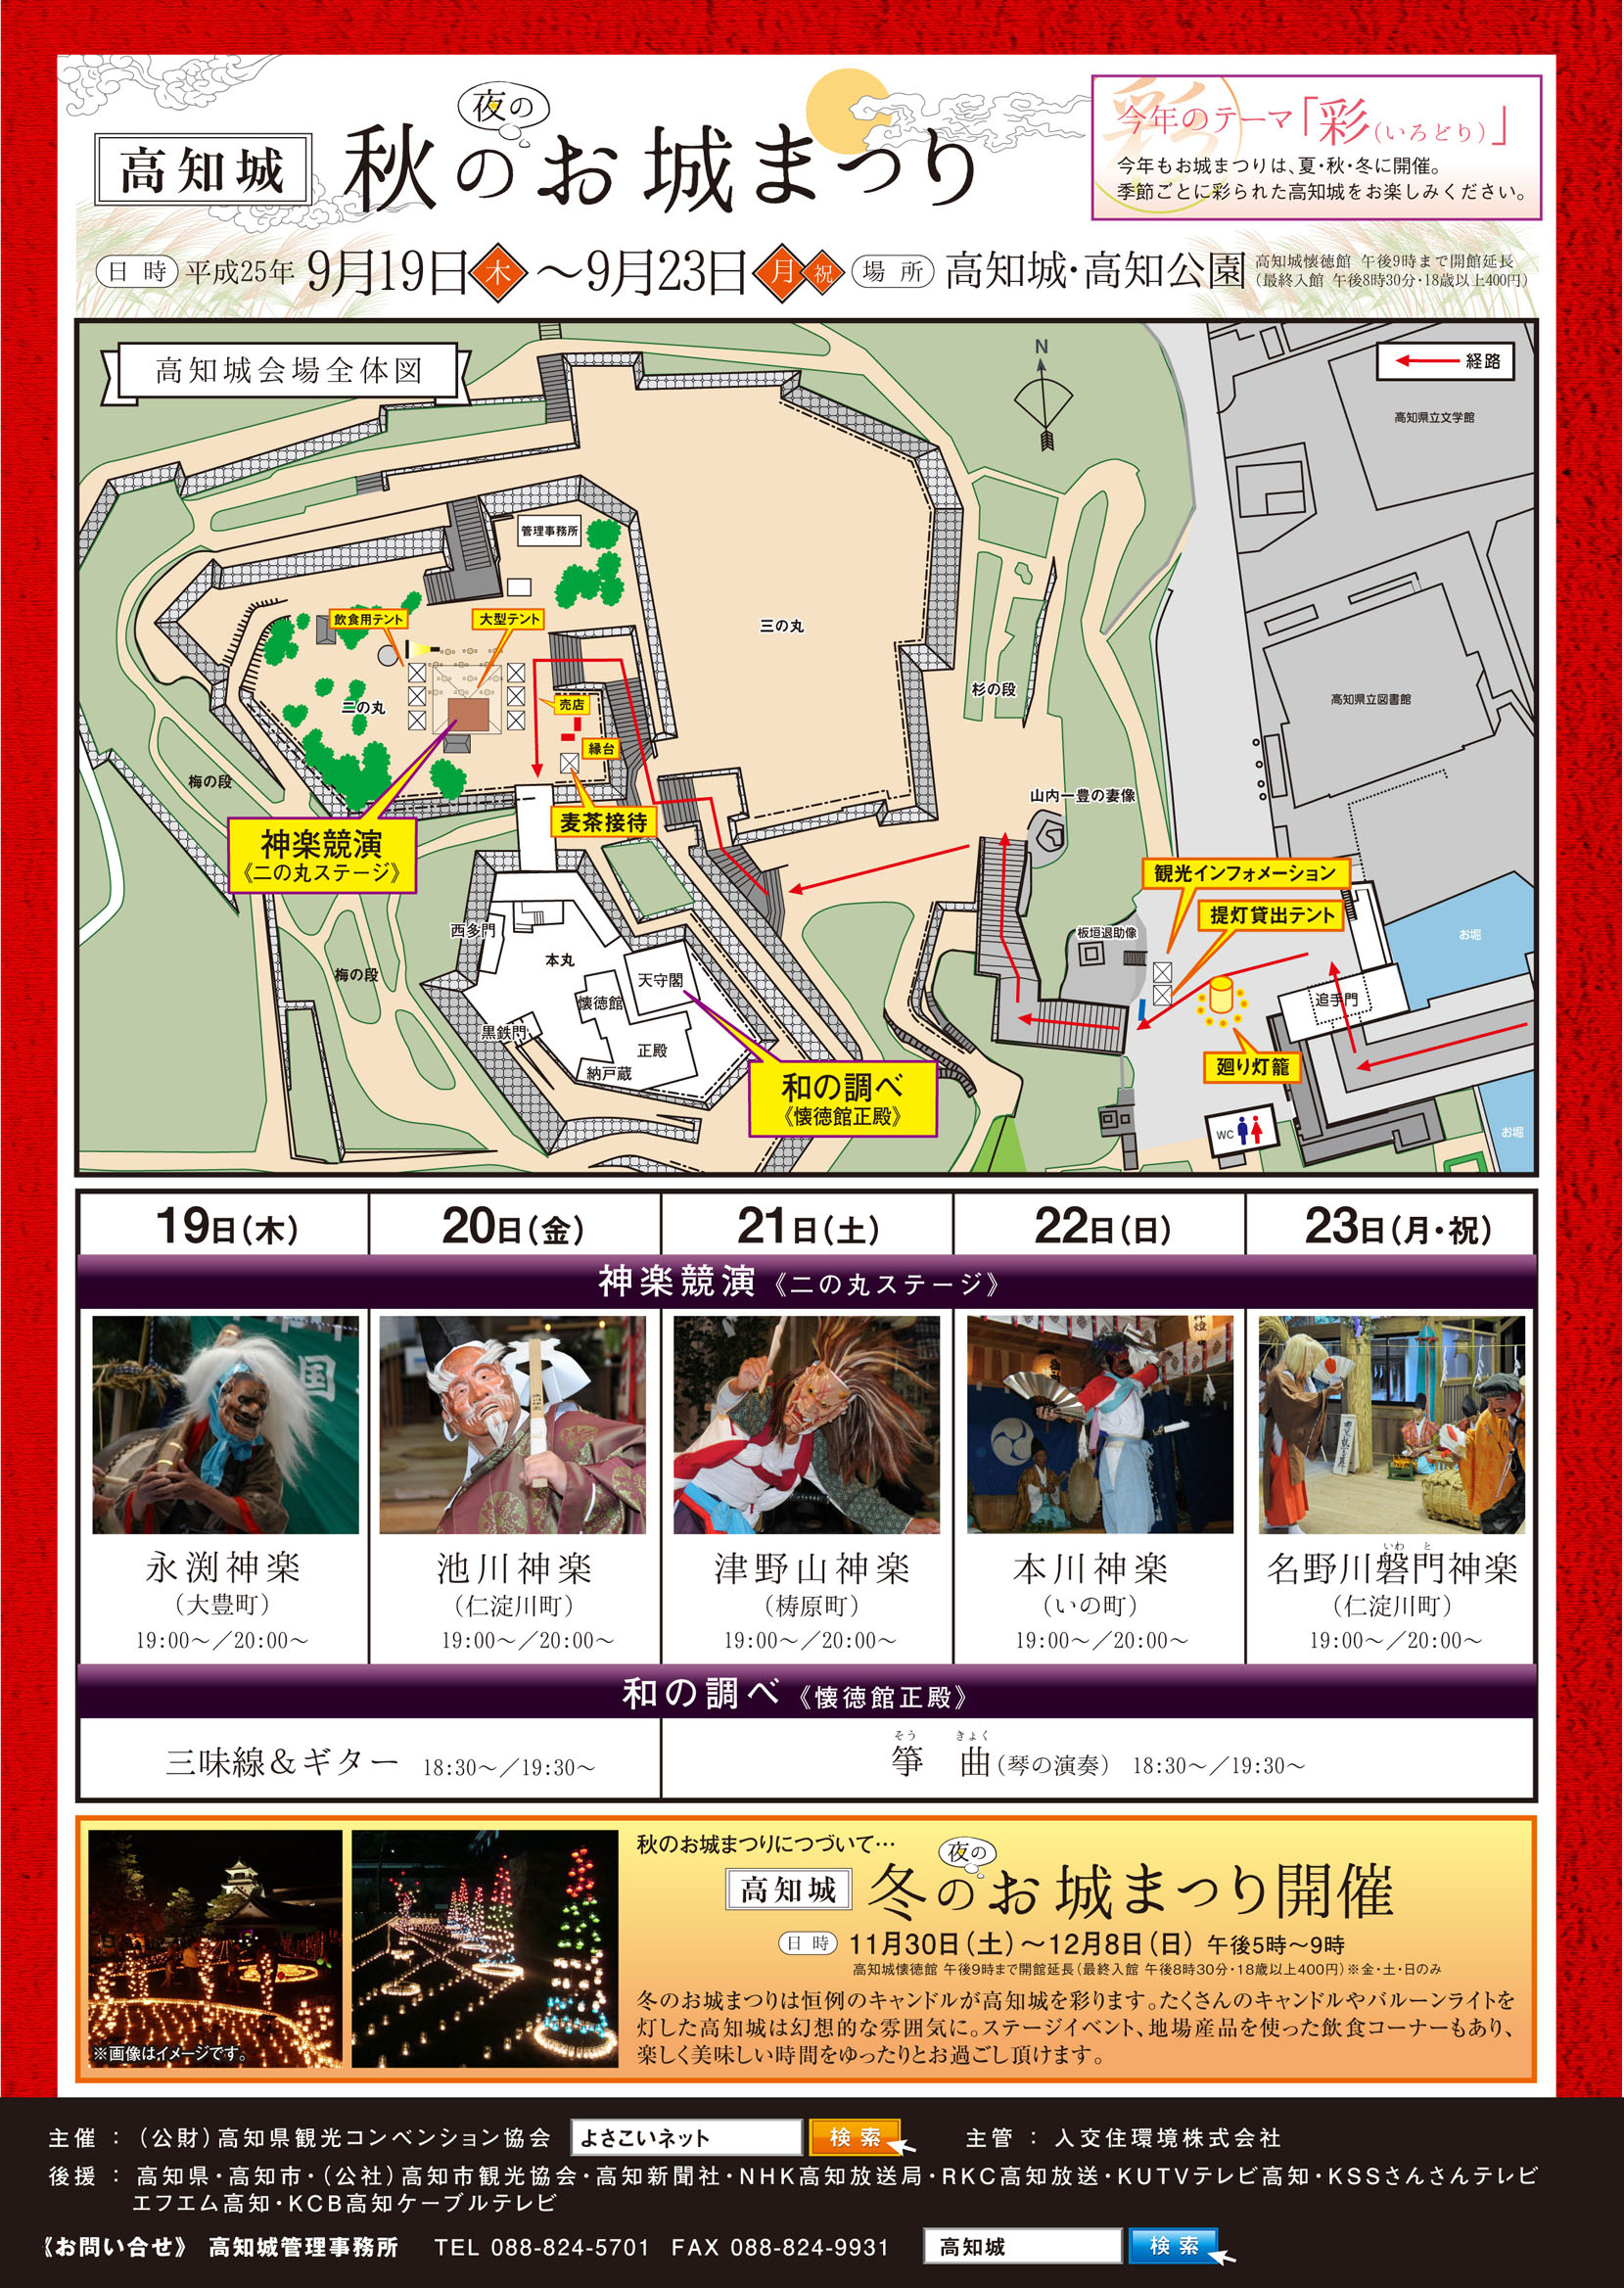 高知城秋のお城祭り